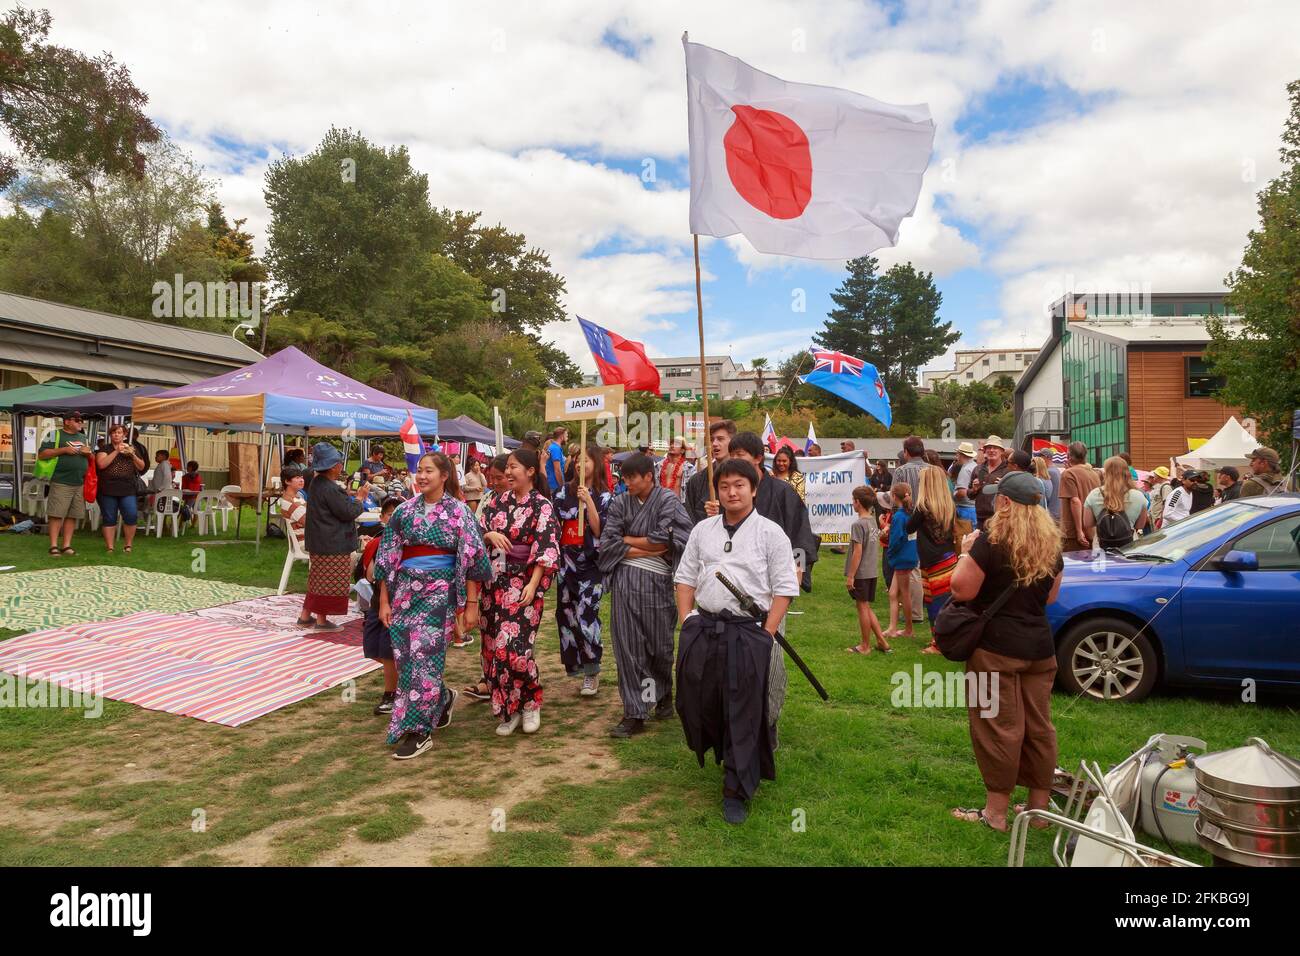 Japaner, einige tragen traditionelle Kimonos und marschieren mit der japanischen Flagge auf einem multikulturellen Fest. Tauranga, Neuseeland Stockfoto